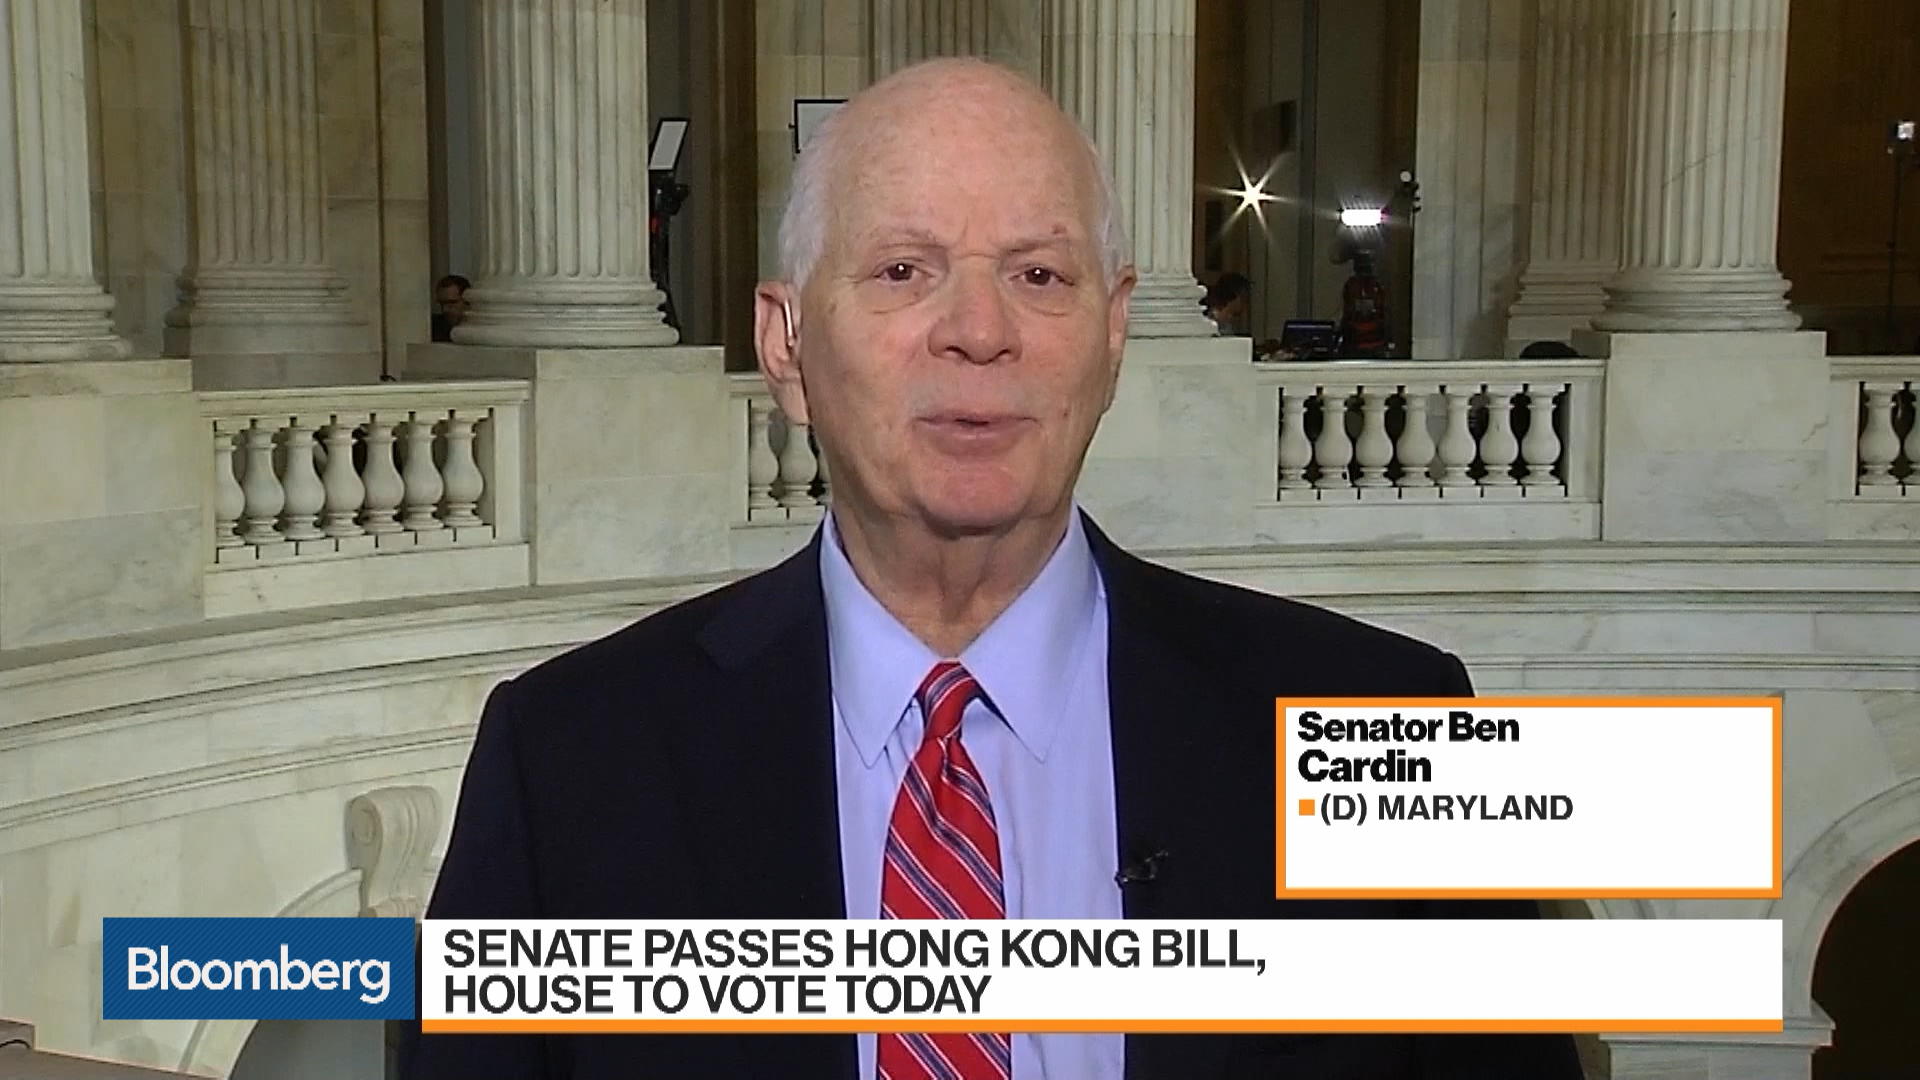 Flipboard: Senator Ben Cardin on the Hong Kong Bill, Impeachment and ERA